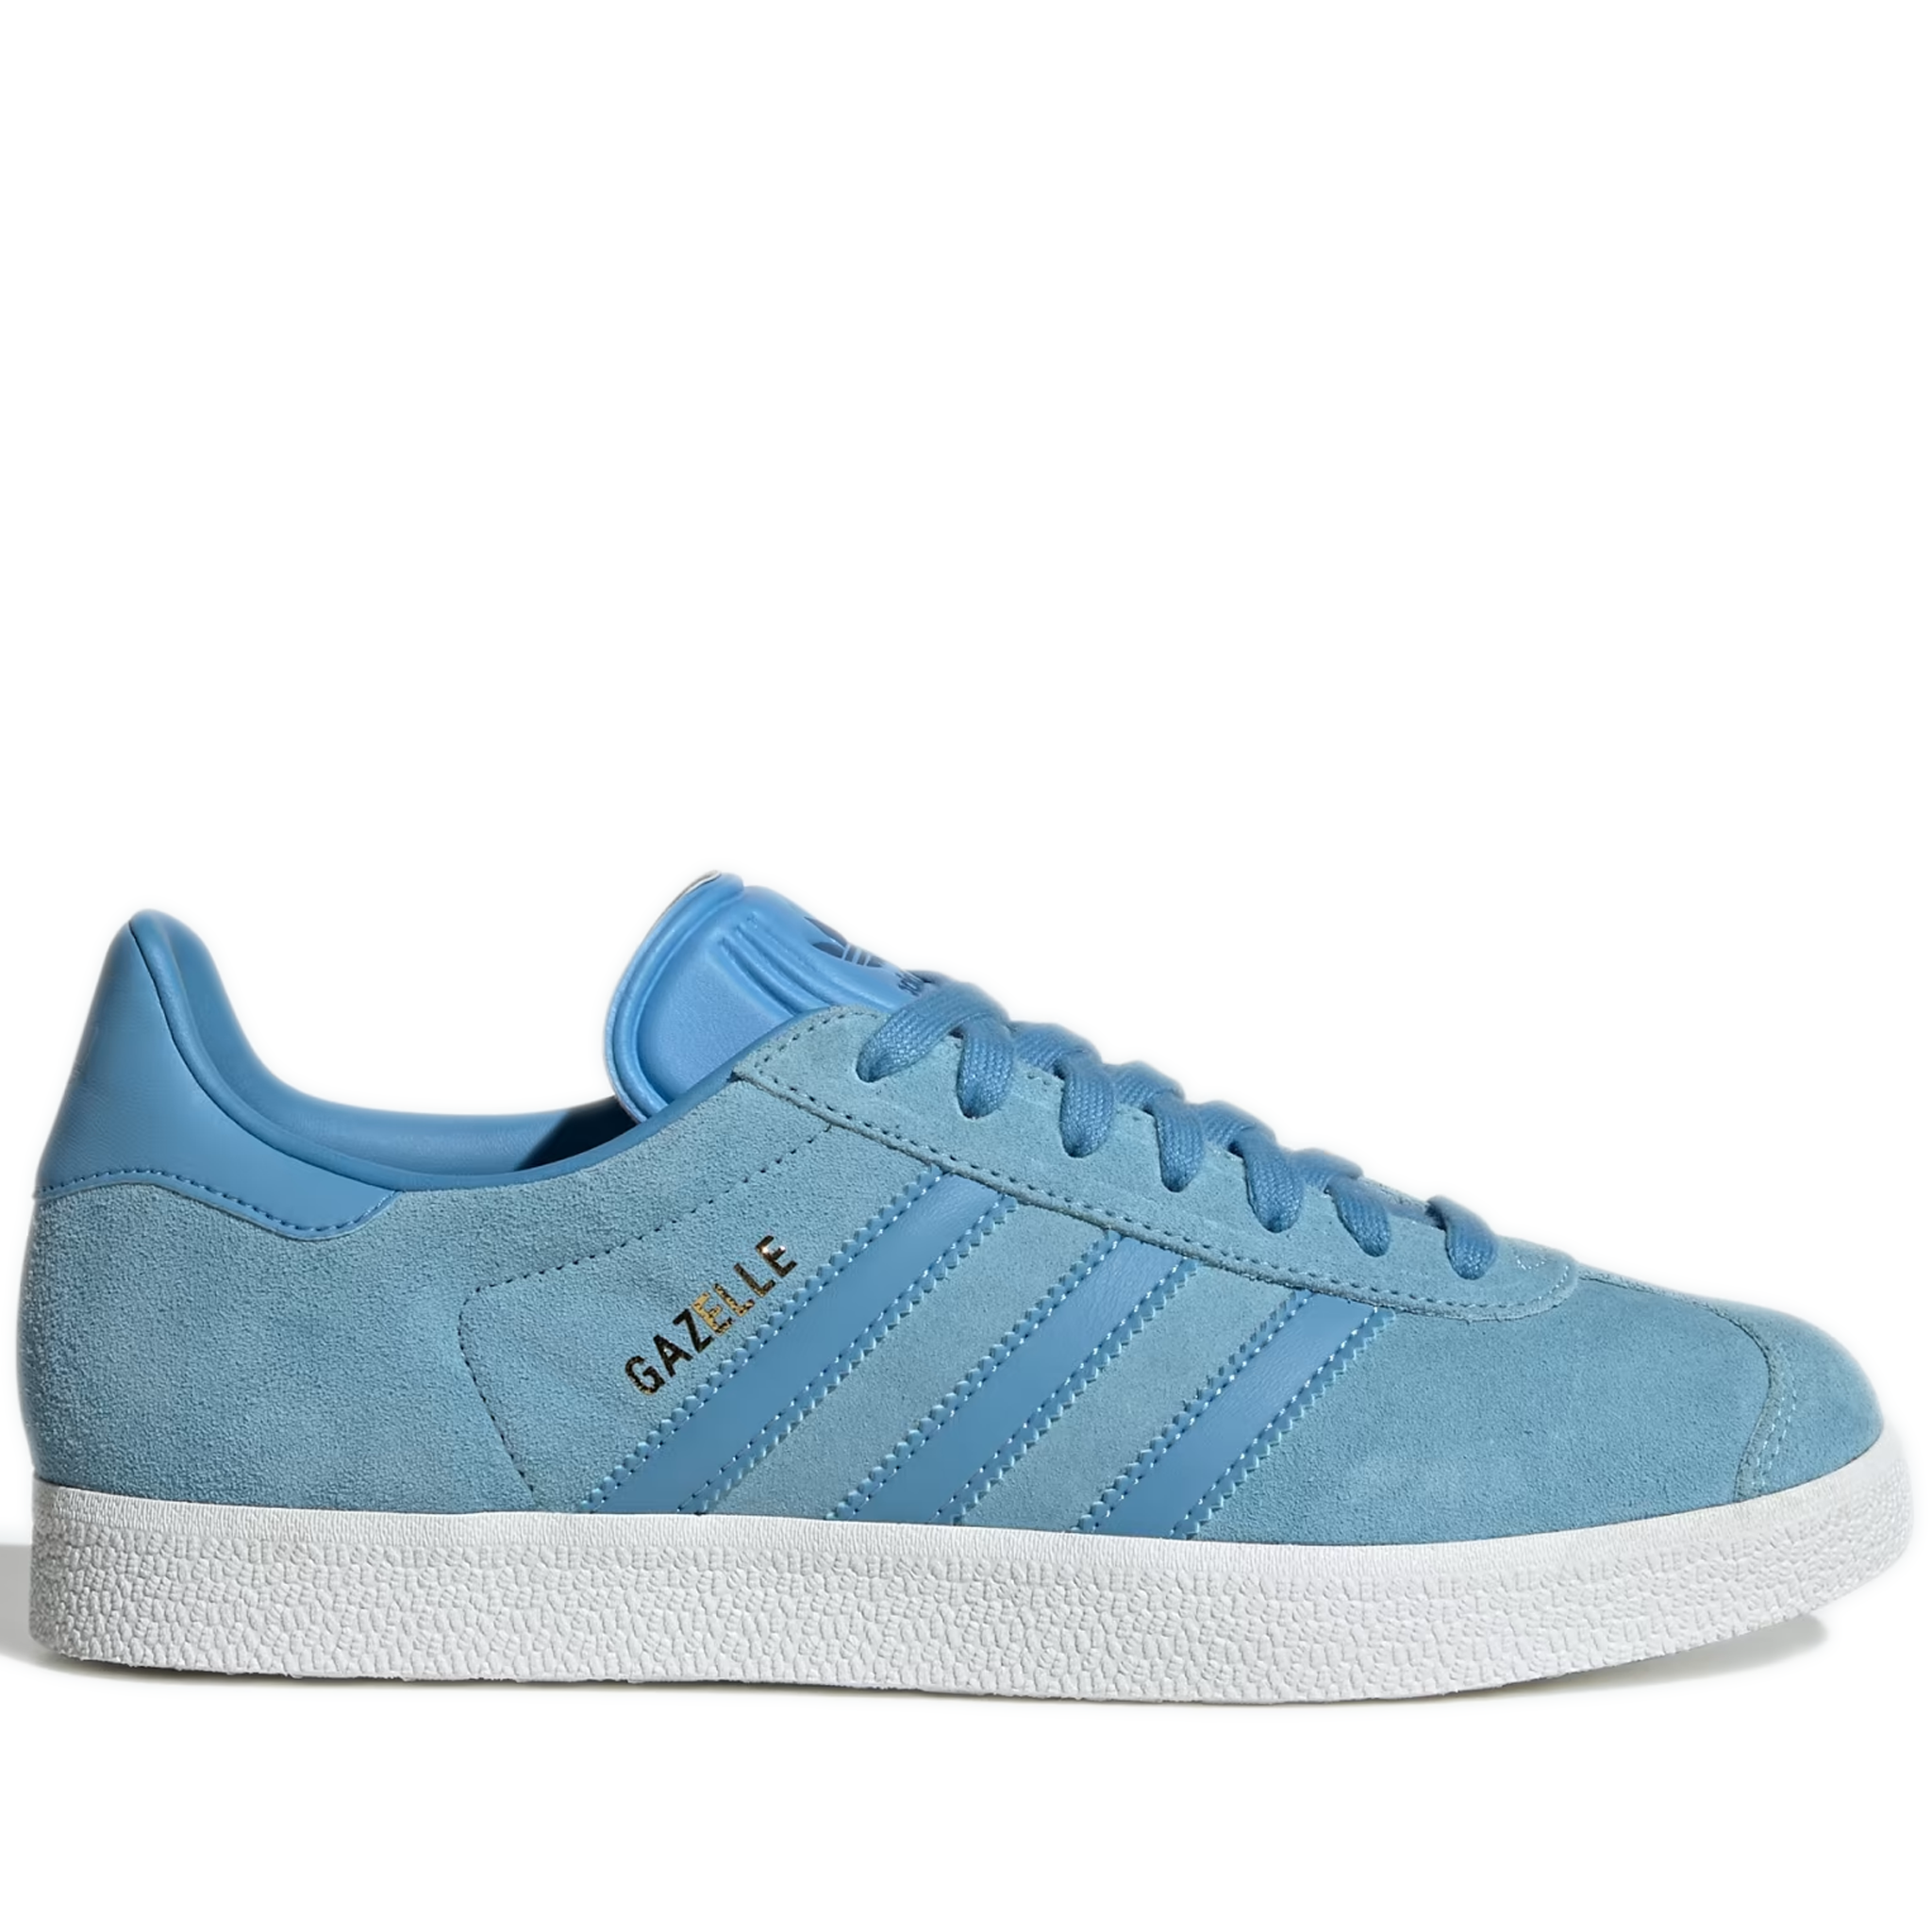 adidas gazelle blue shoes